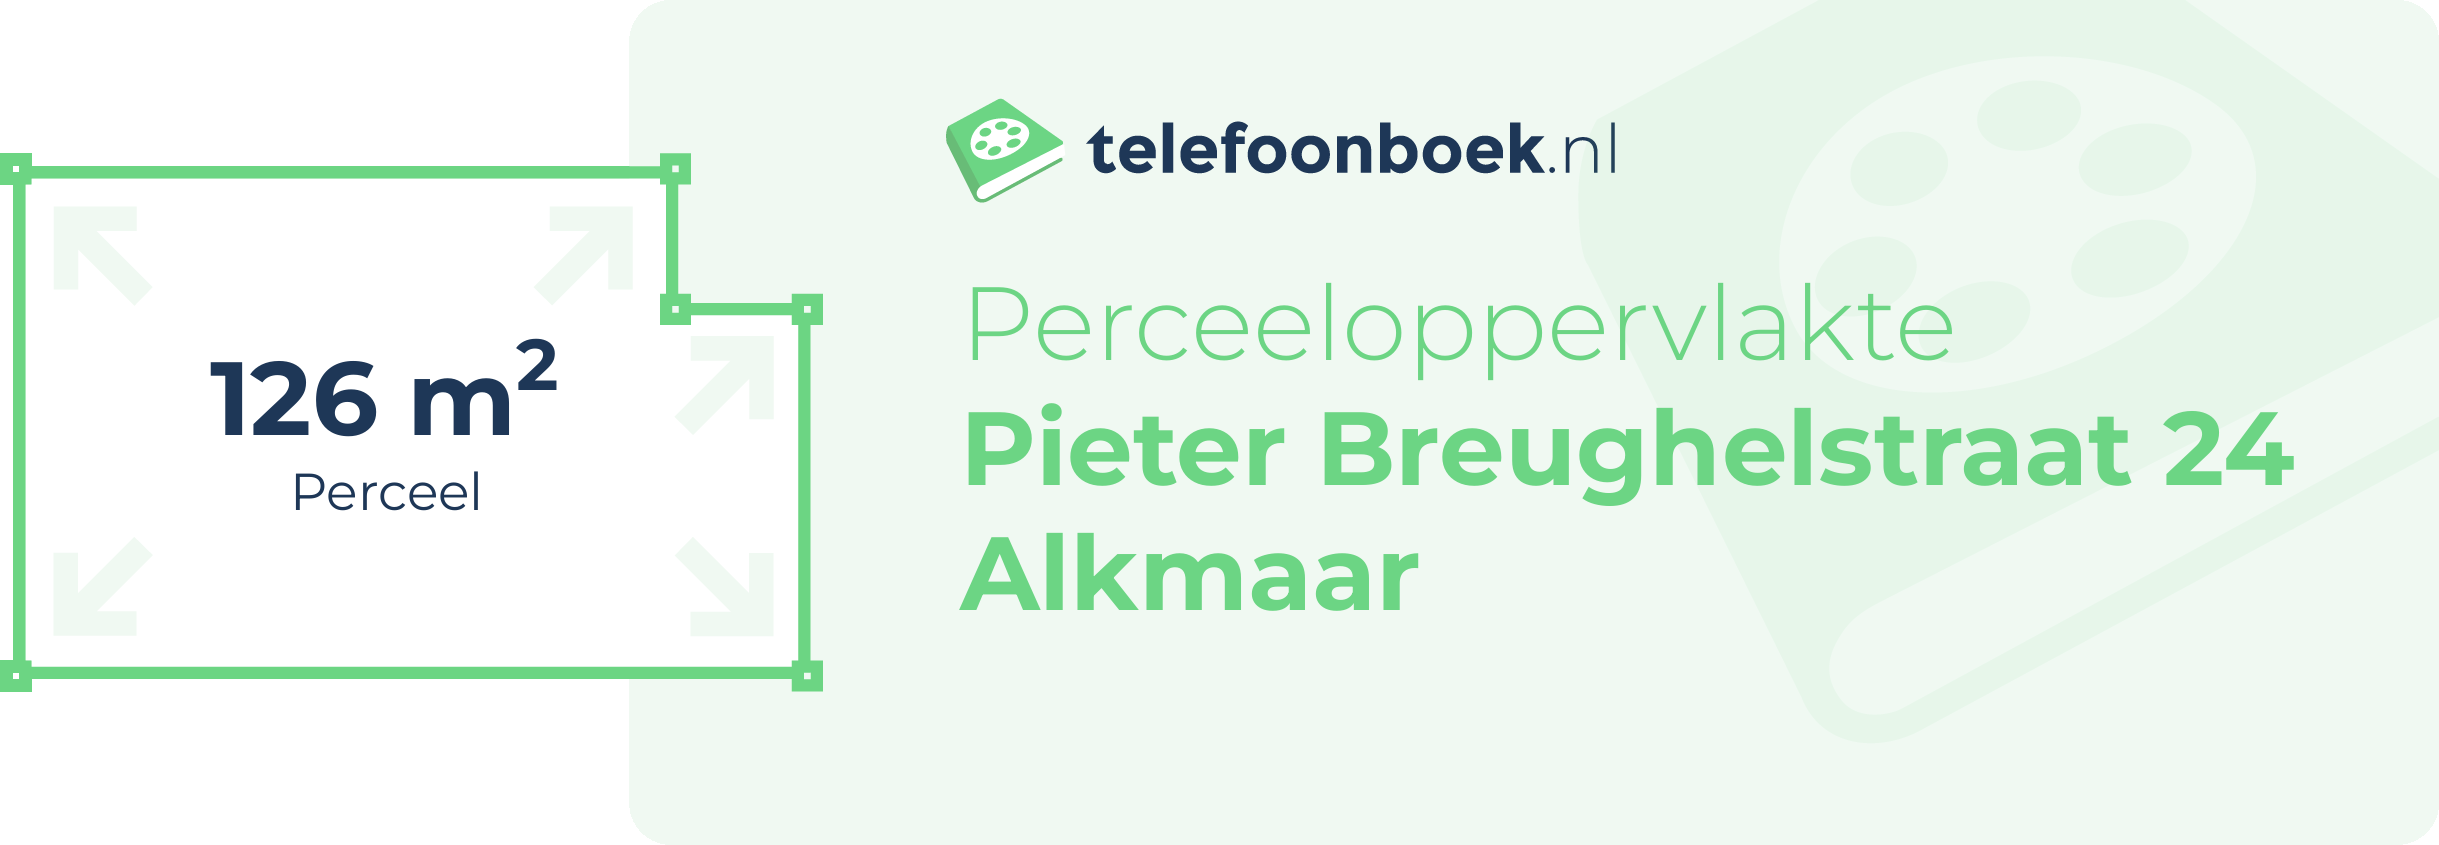 Perceeloppervlakte Pieter Breughelstraat 24 Alkmaar